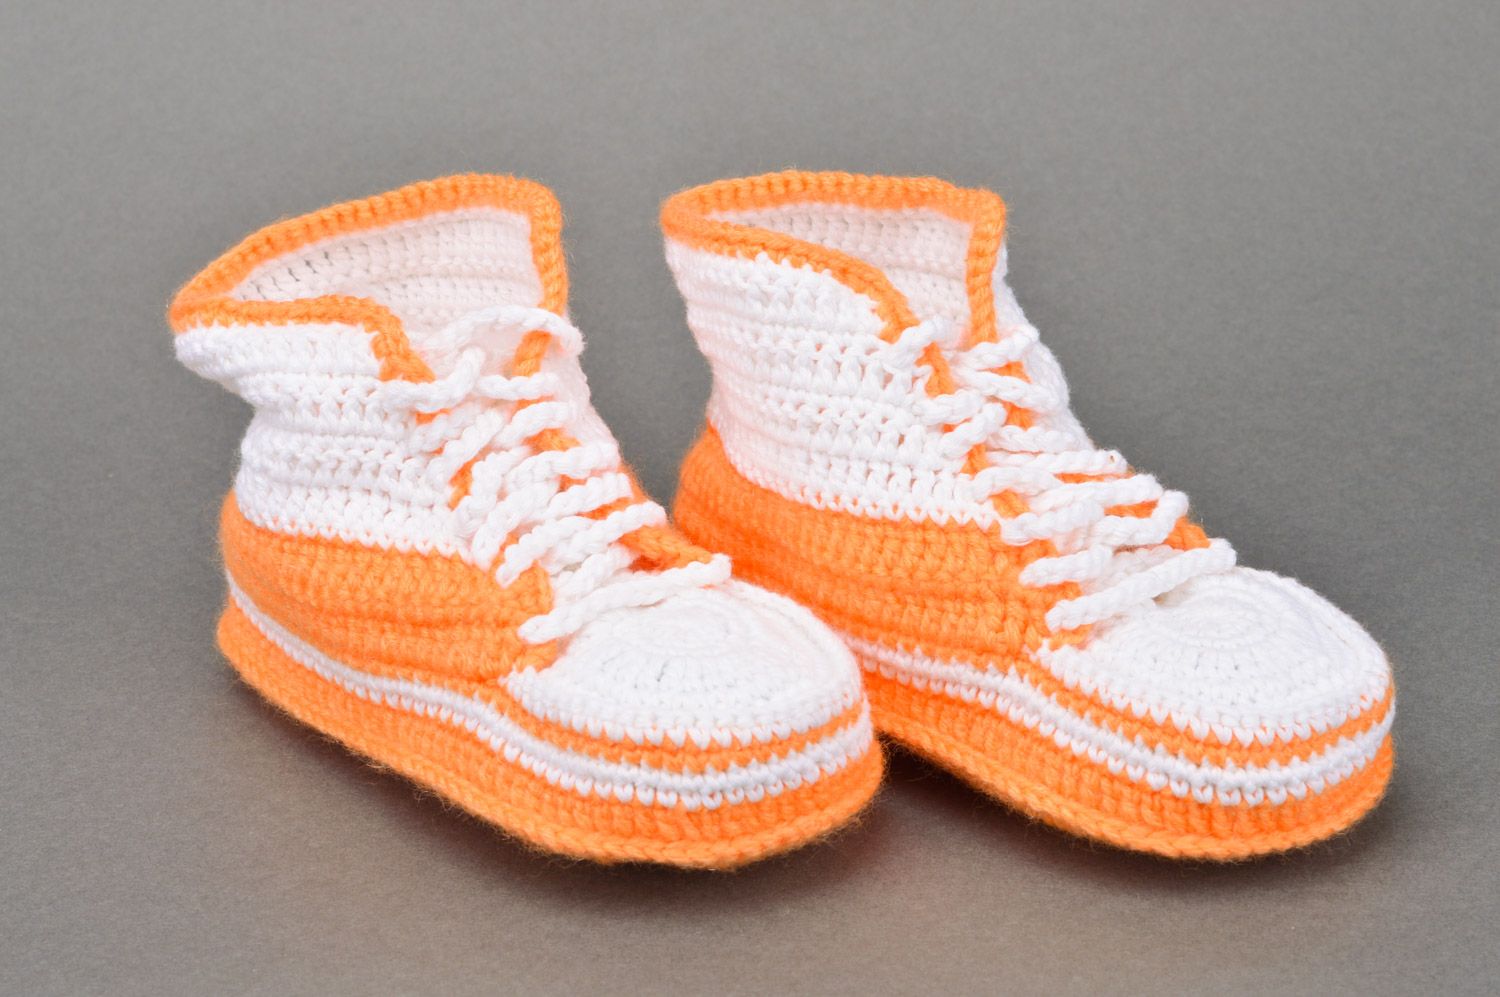 Chaussons baskets tricotés au crochet orange-blanc à lacets faits main pour bébé photo 2